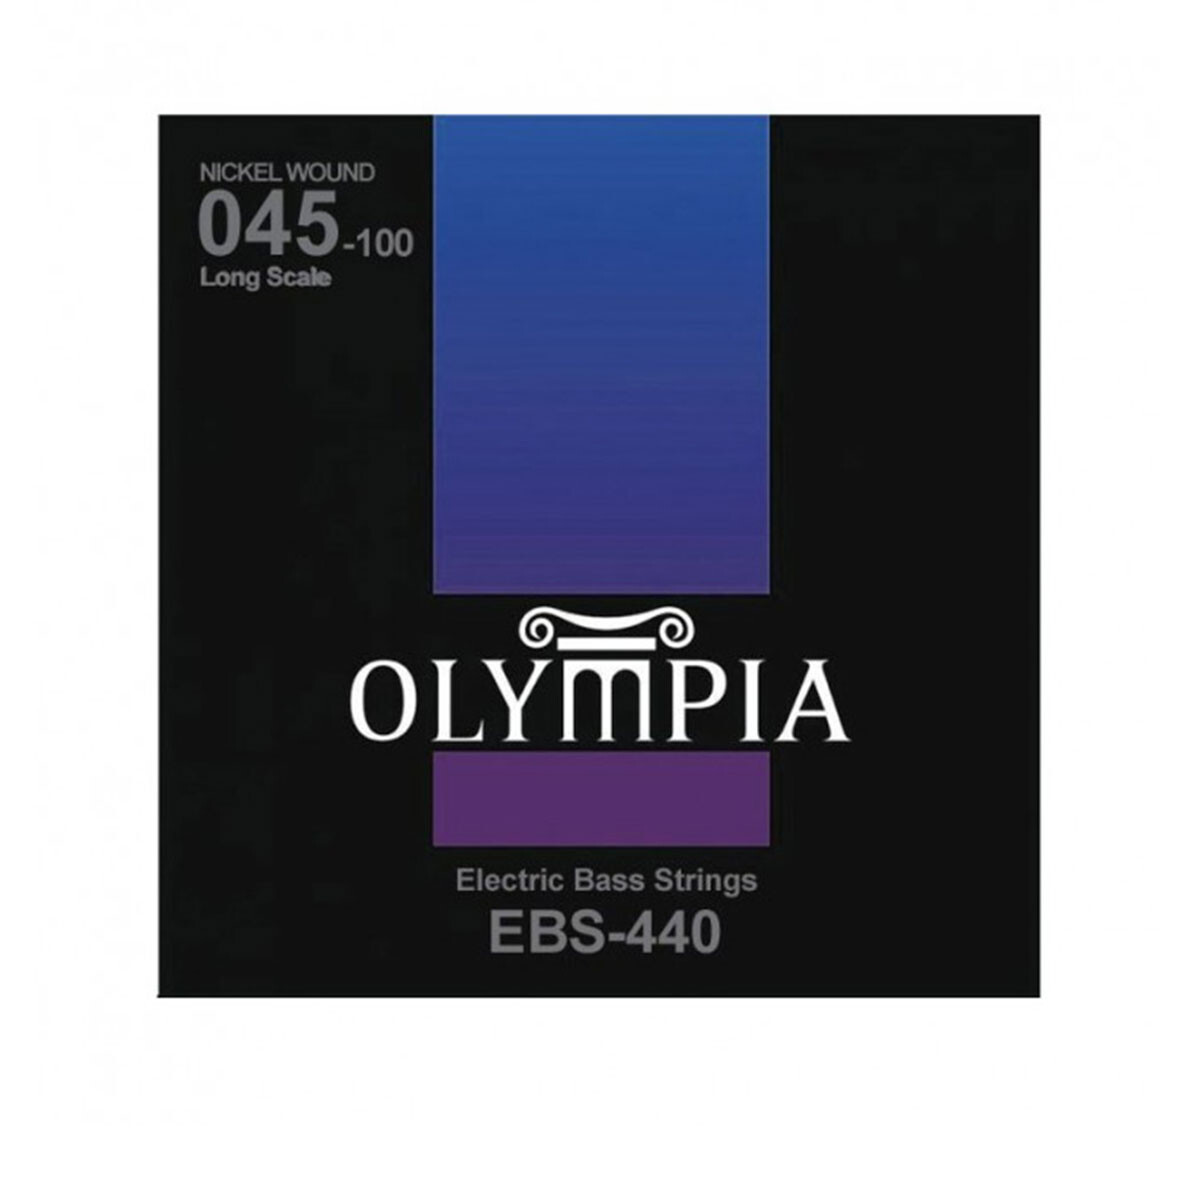 Encordado Bajo Olympia Ebs440 45-100 